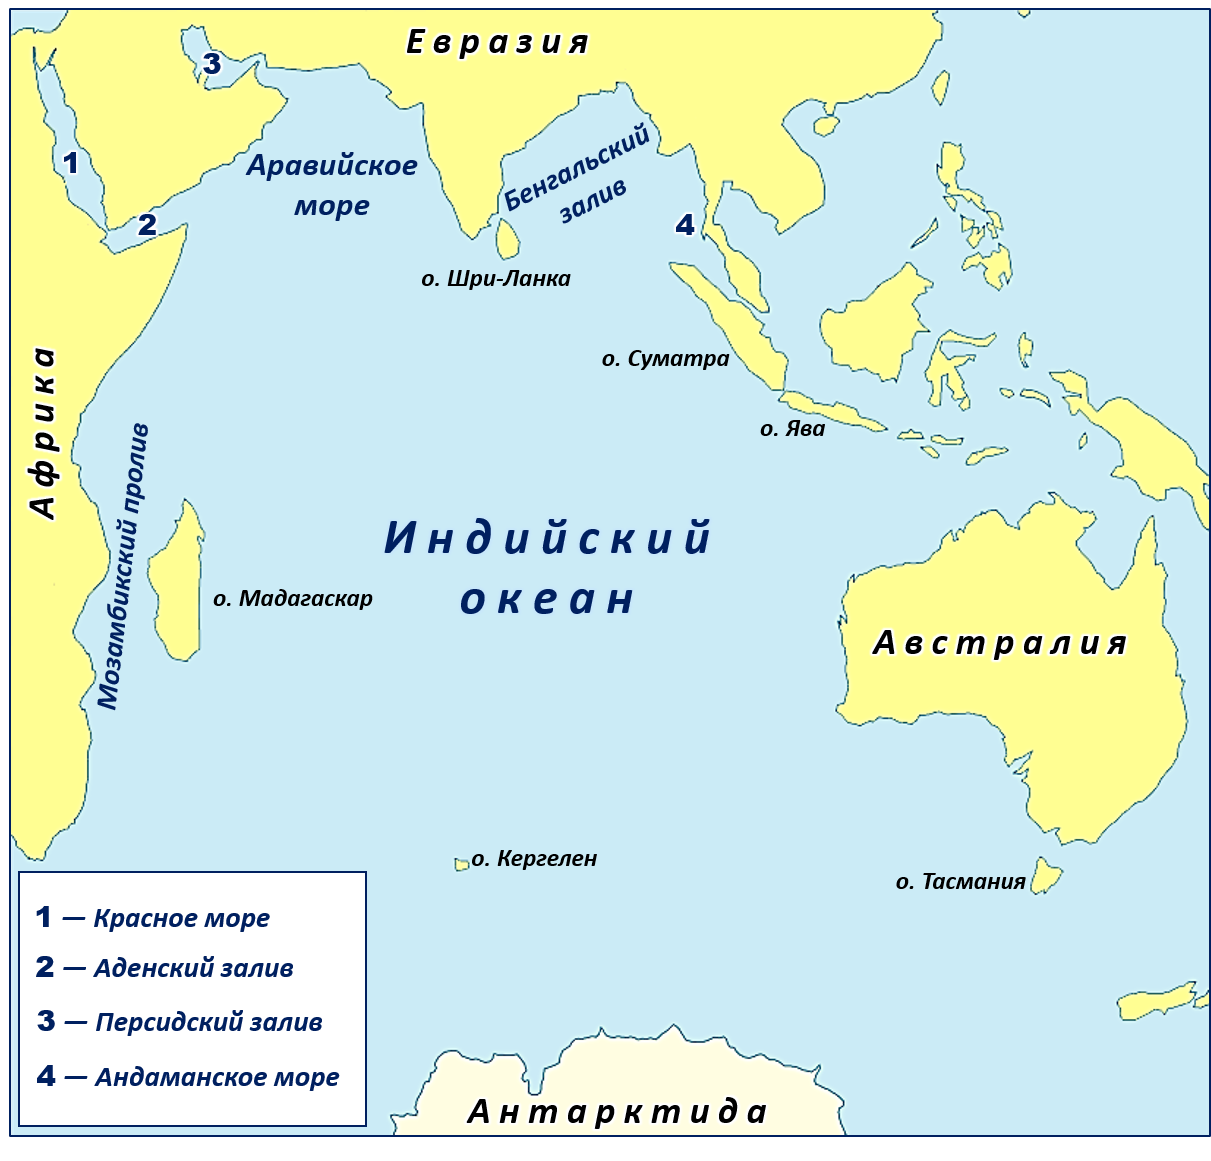 Название частей тихого океана. Карта индийского океана с морями заливами и проливами. Новый Континент в индийском океане. Крупнейшие моря индийского океана на карте. Архипелаг Кергелен новый Континент.